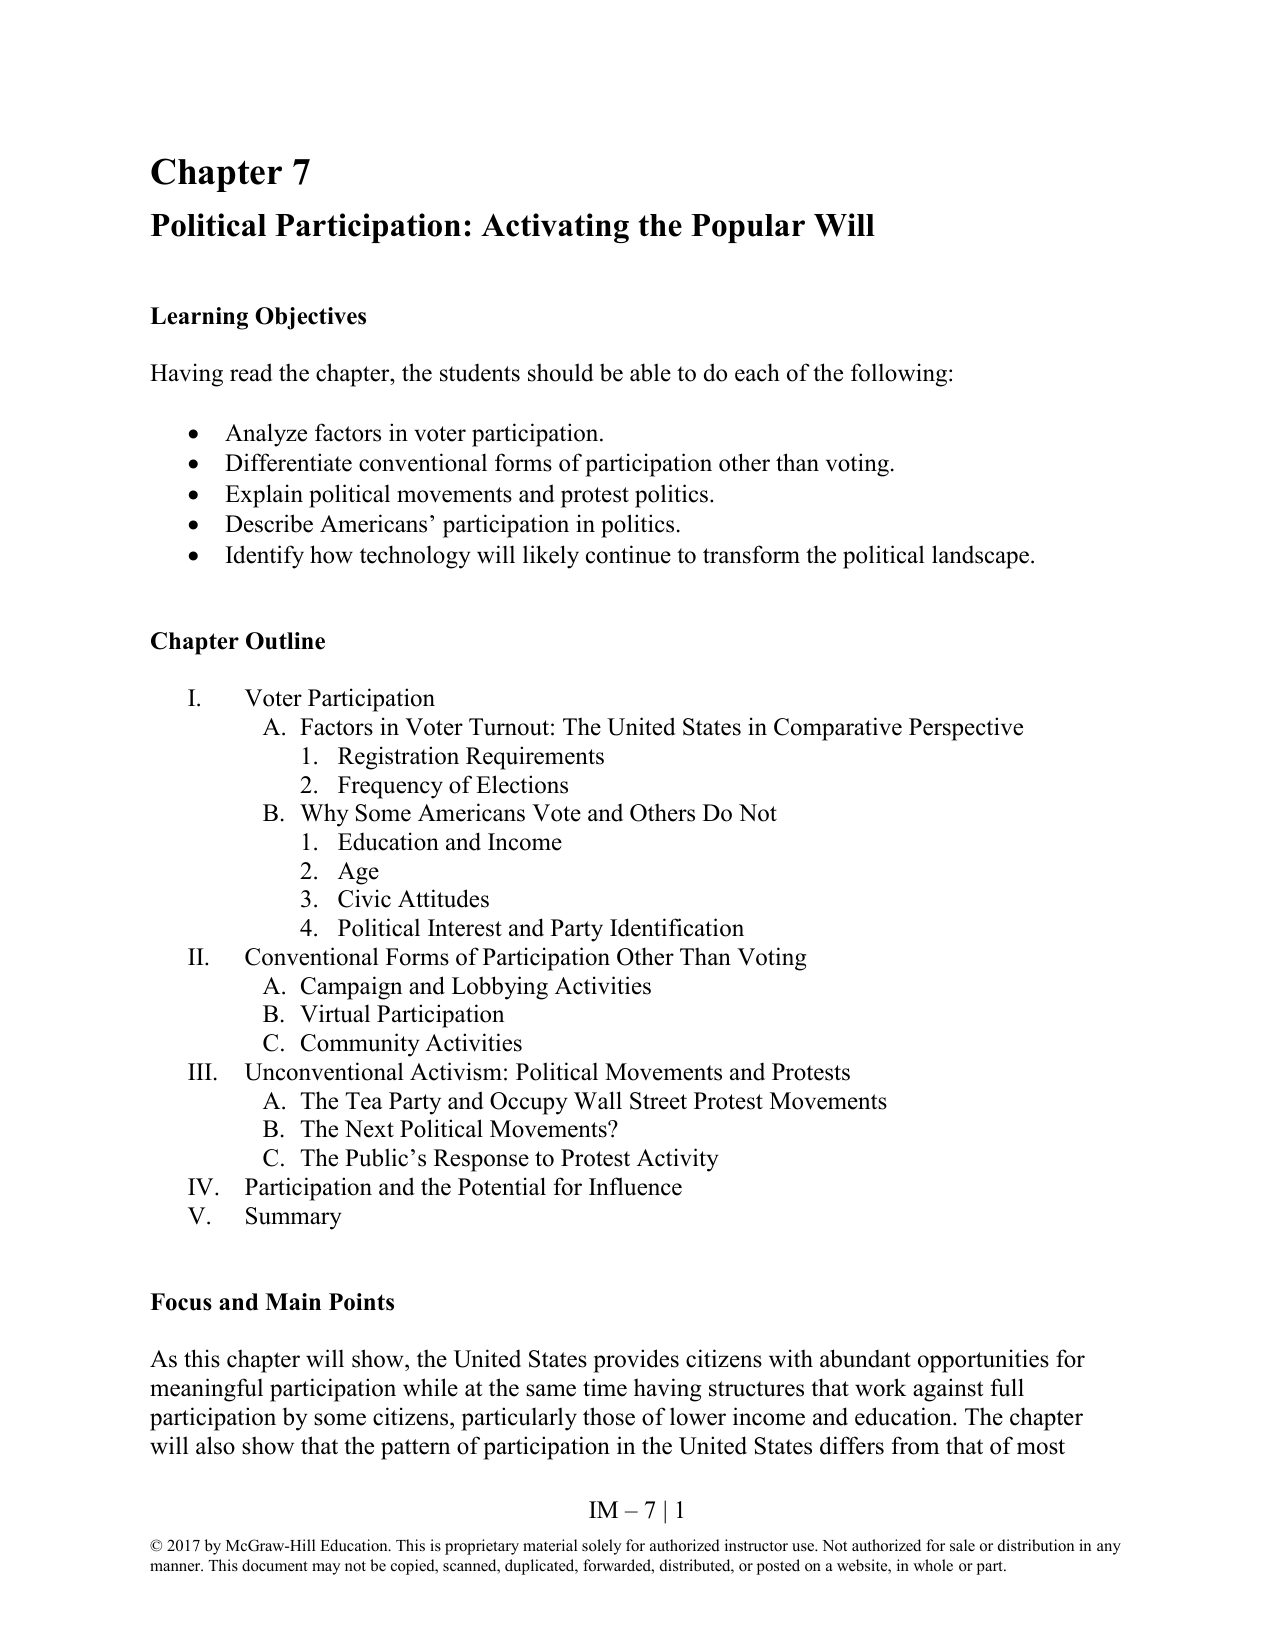 political participation essay outline